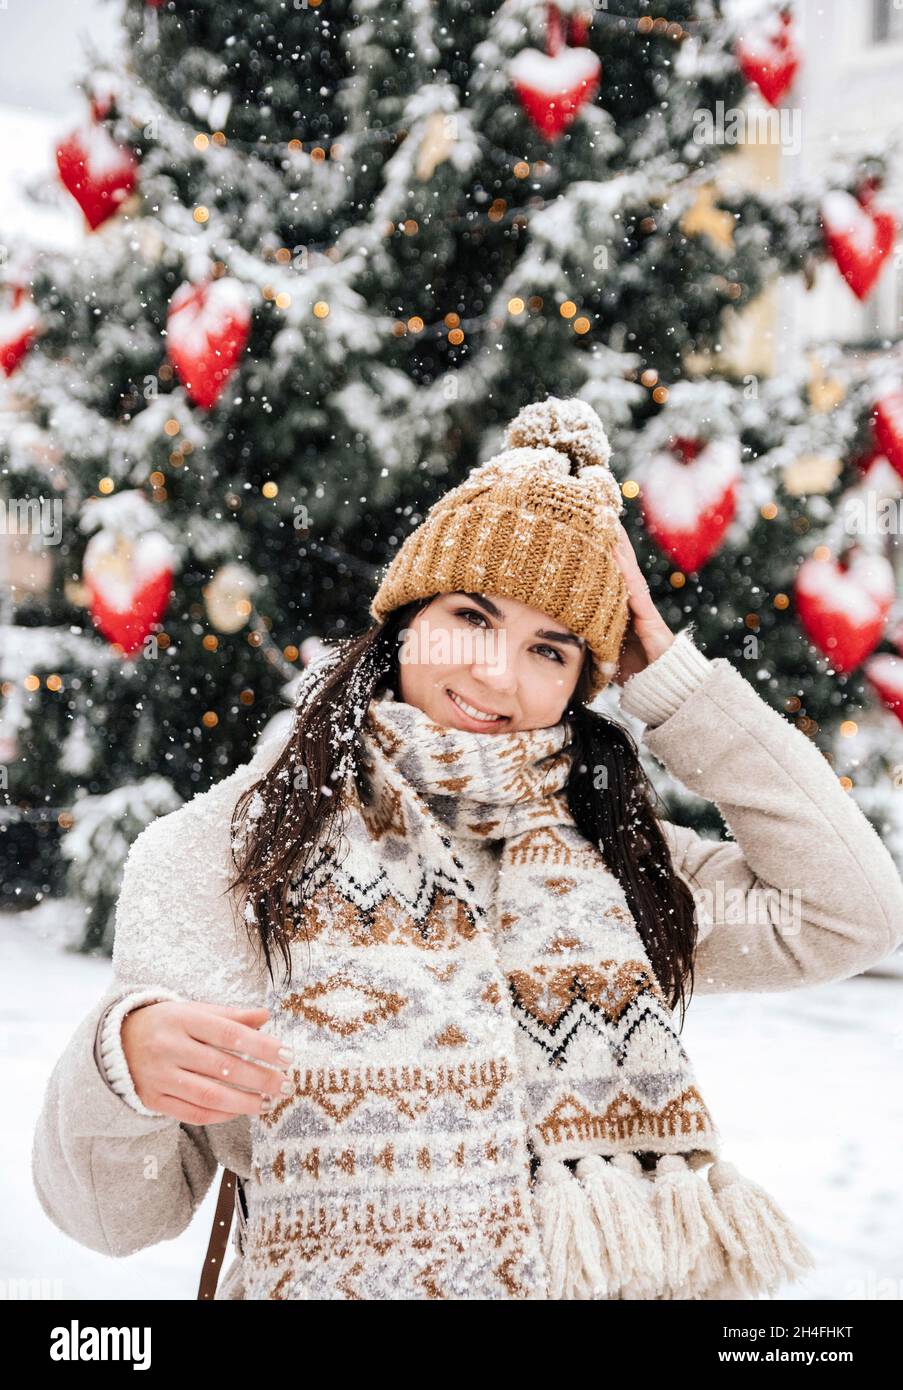 Ritratto di una giovane donna che indossa abiti invernali eleganti, in piedi davanti all'albero di natale in una giornata nevosa in città Foto Stock